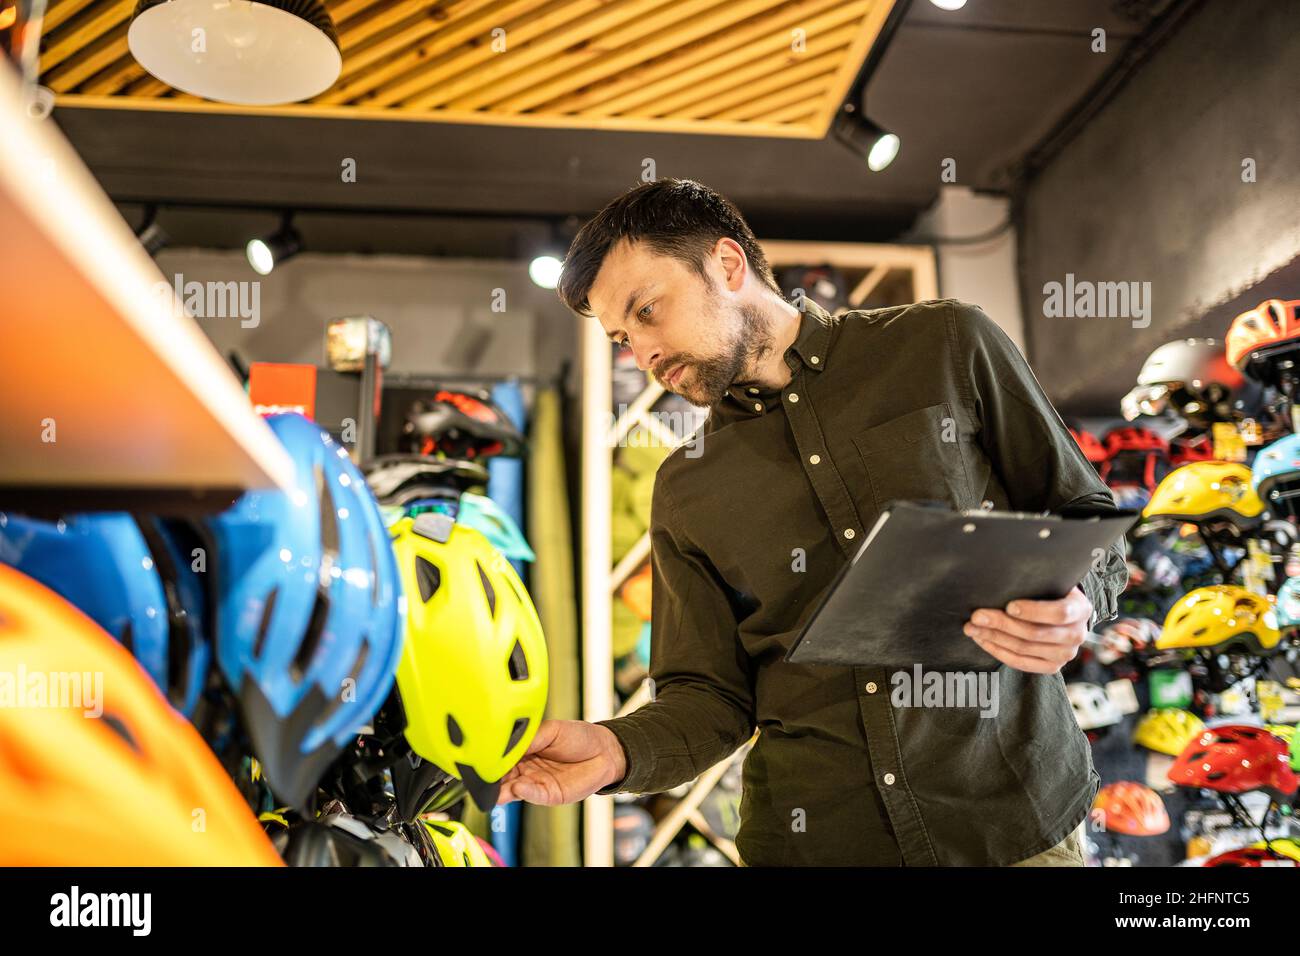 Ein männlicher Bike-Shop-Manager führt in einem Bike-Shop eine Inventarisierung von Sporthelmen durch. Der Besitzer eines Sportladens mit einem Clipboard in den Händen prüft die Stockfoto